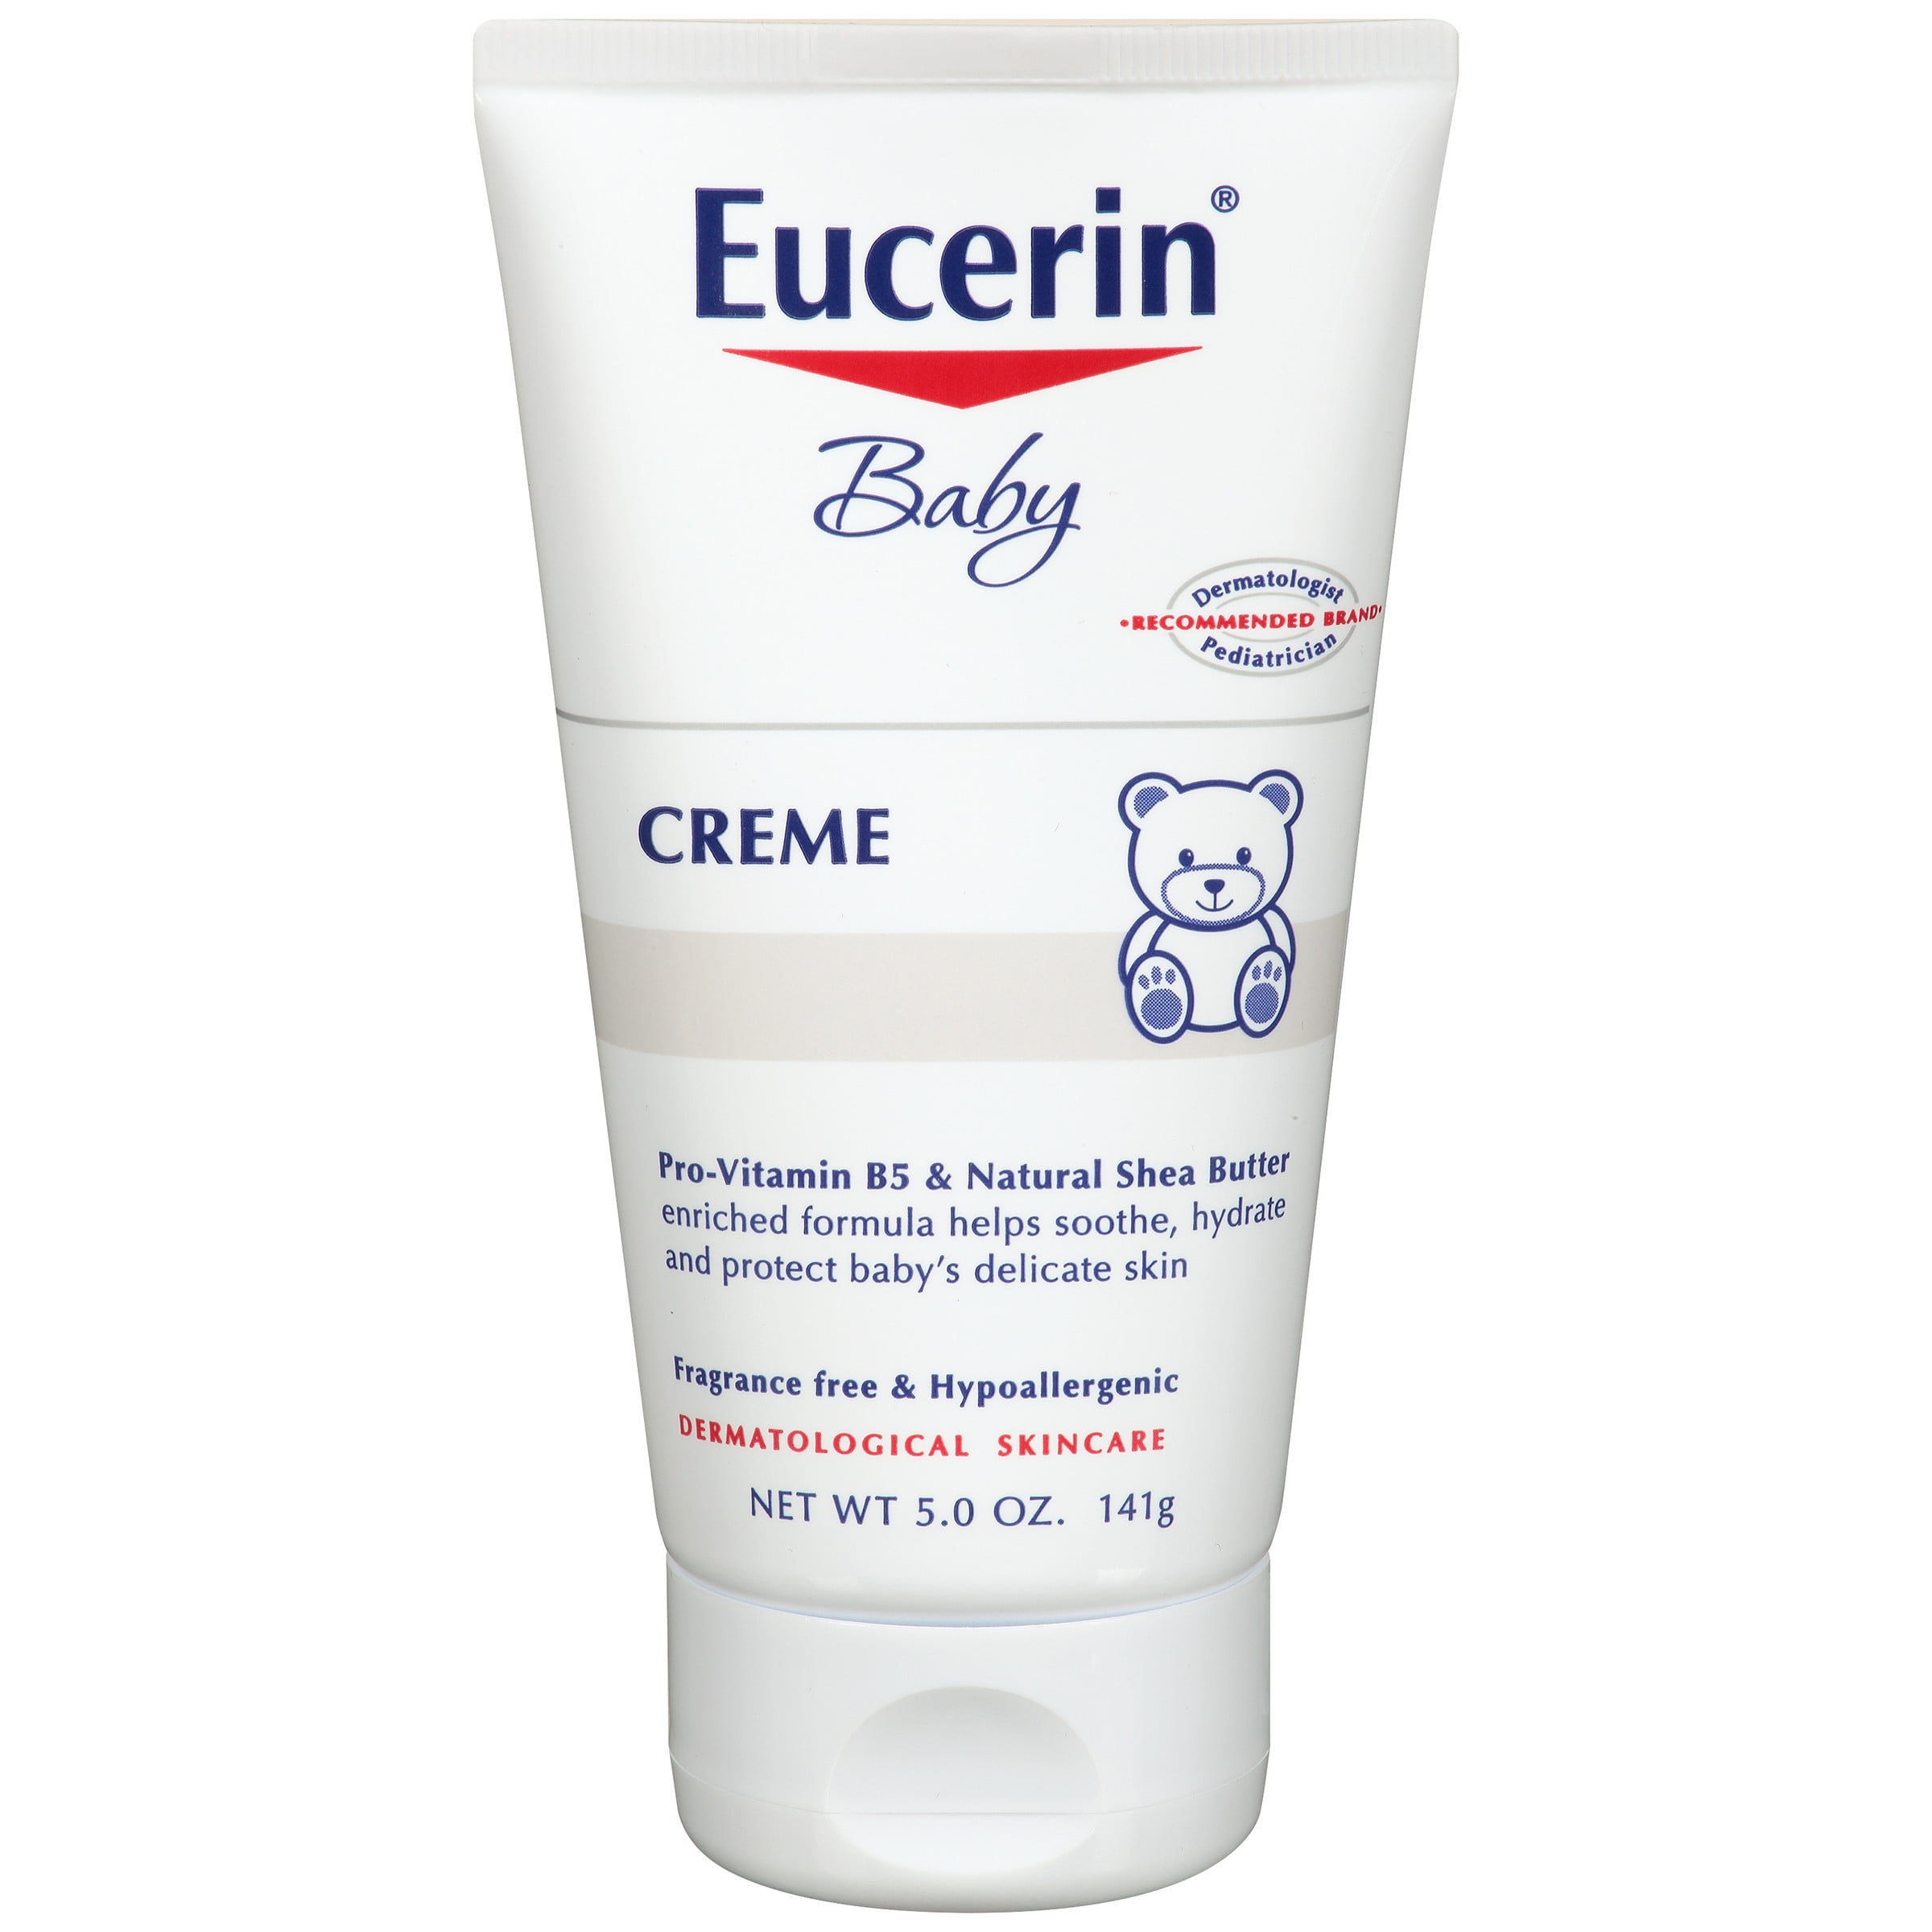 Eucerin cream baby